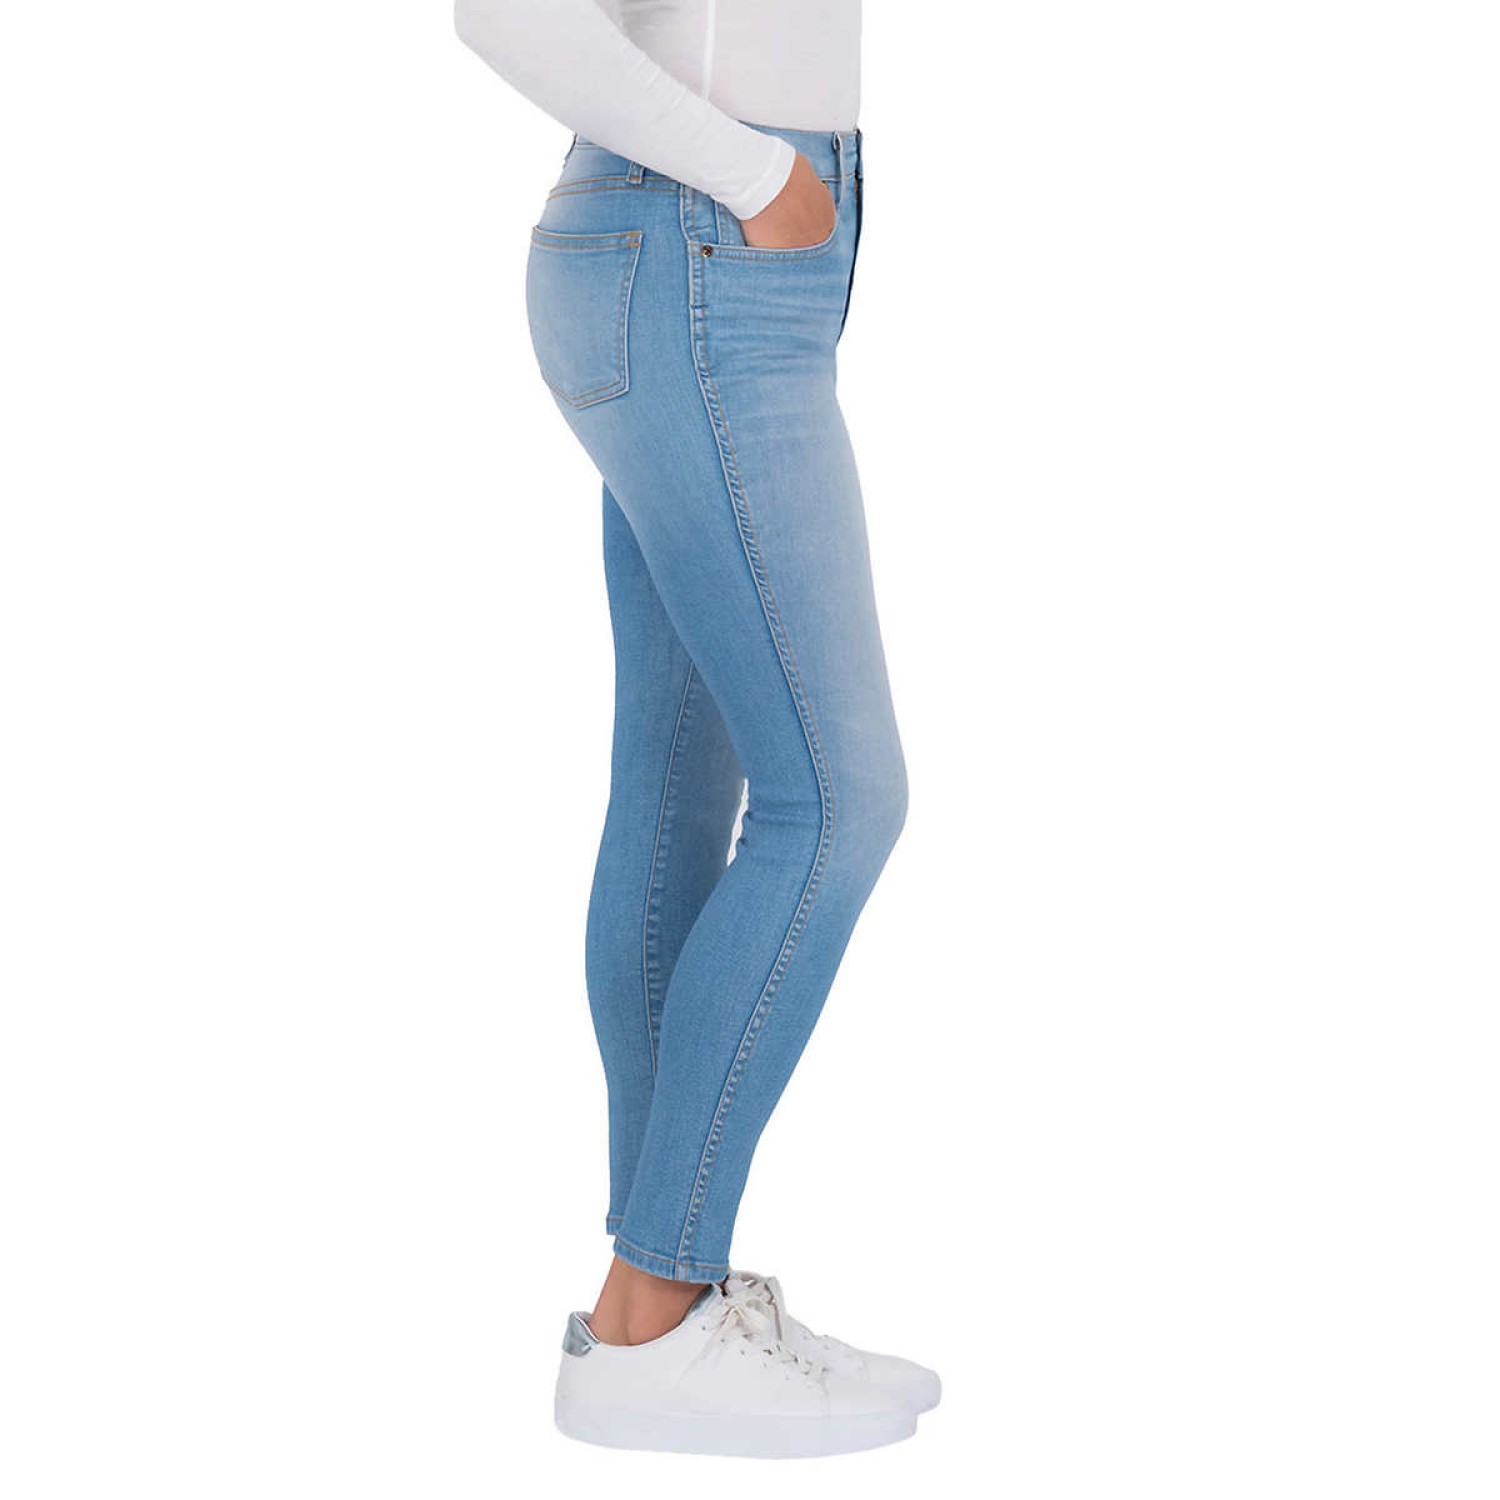 Kirkland Signature Ladies' High-Rise Skinny Jean, Light Blue, 8